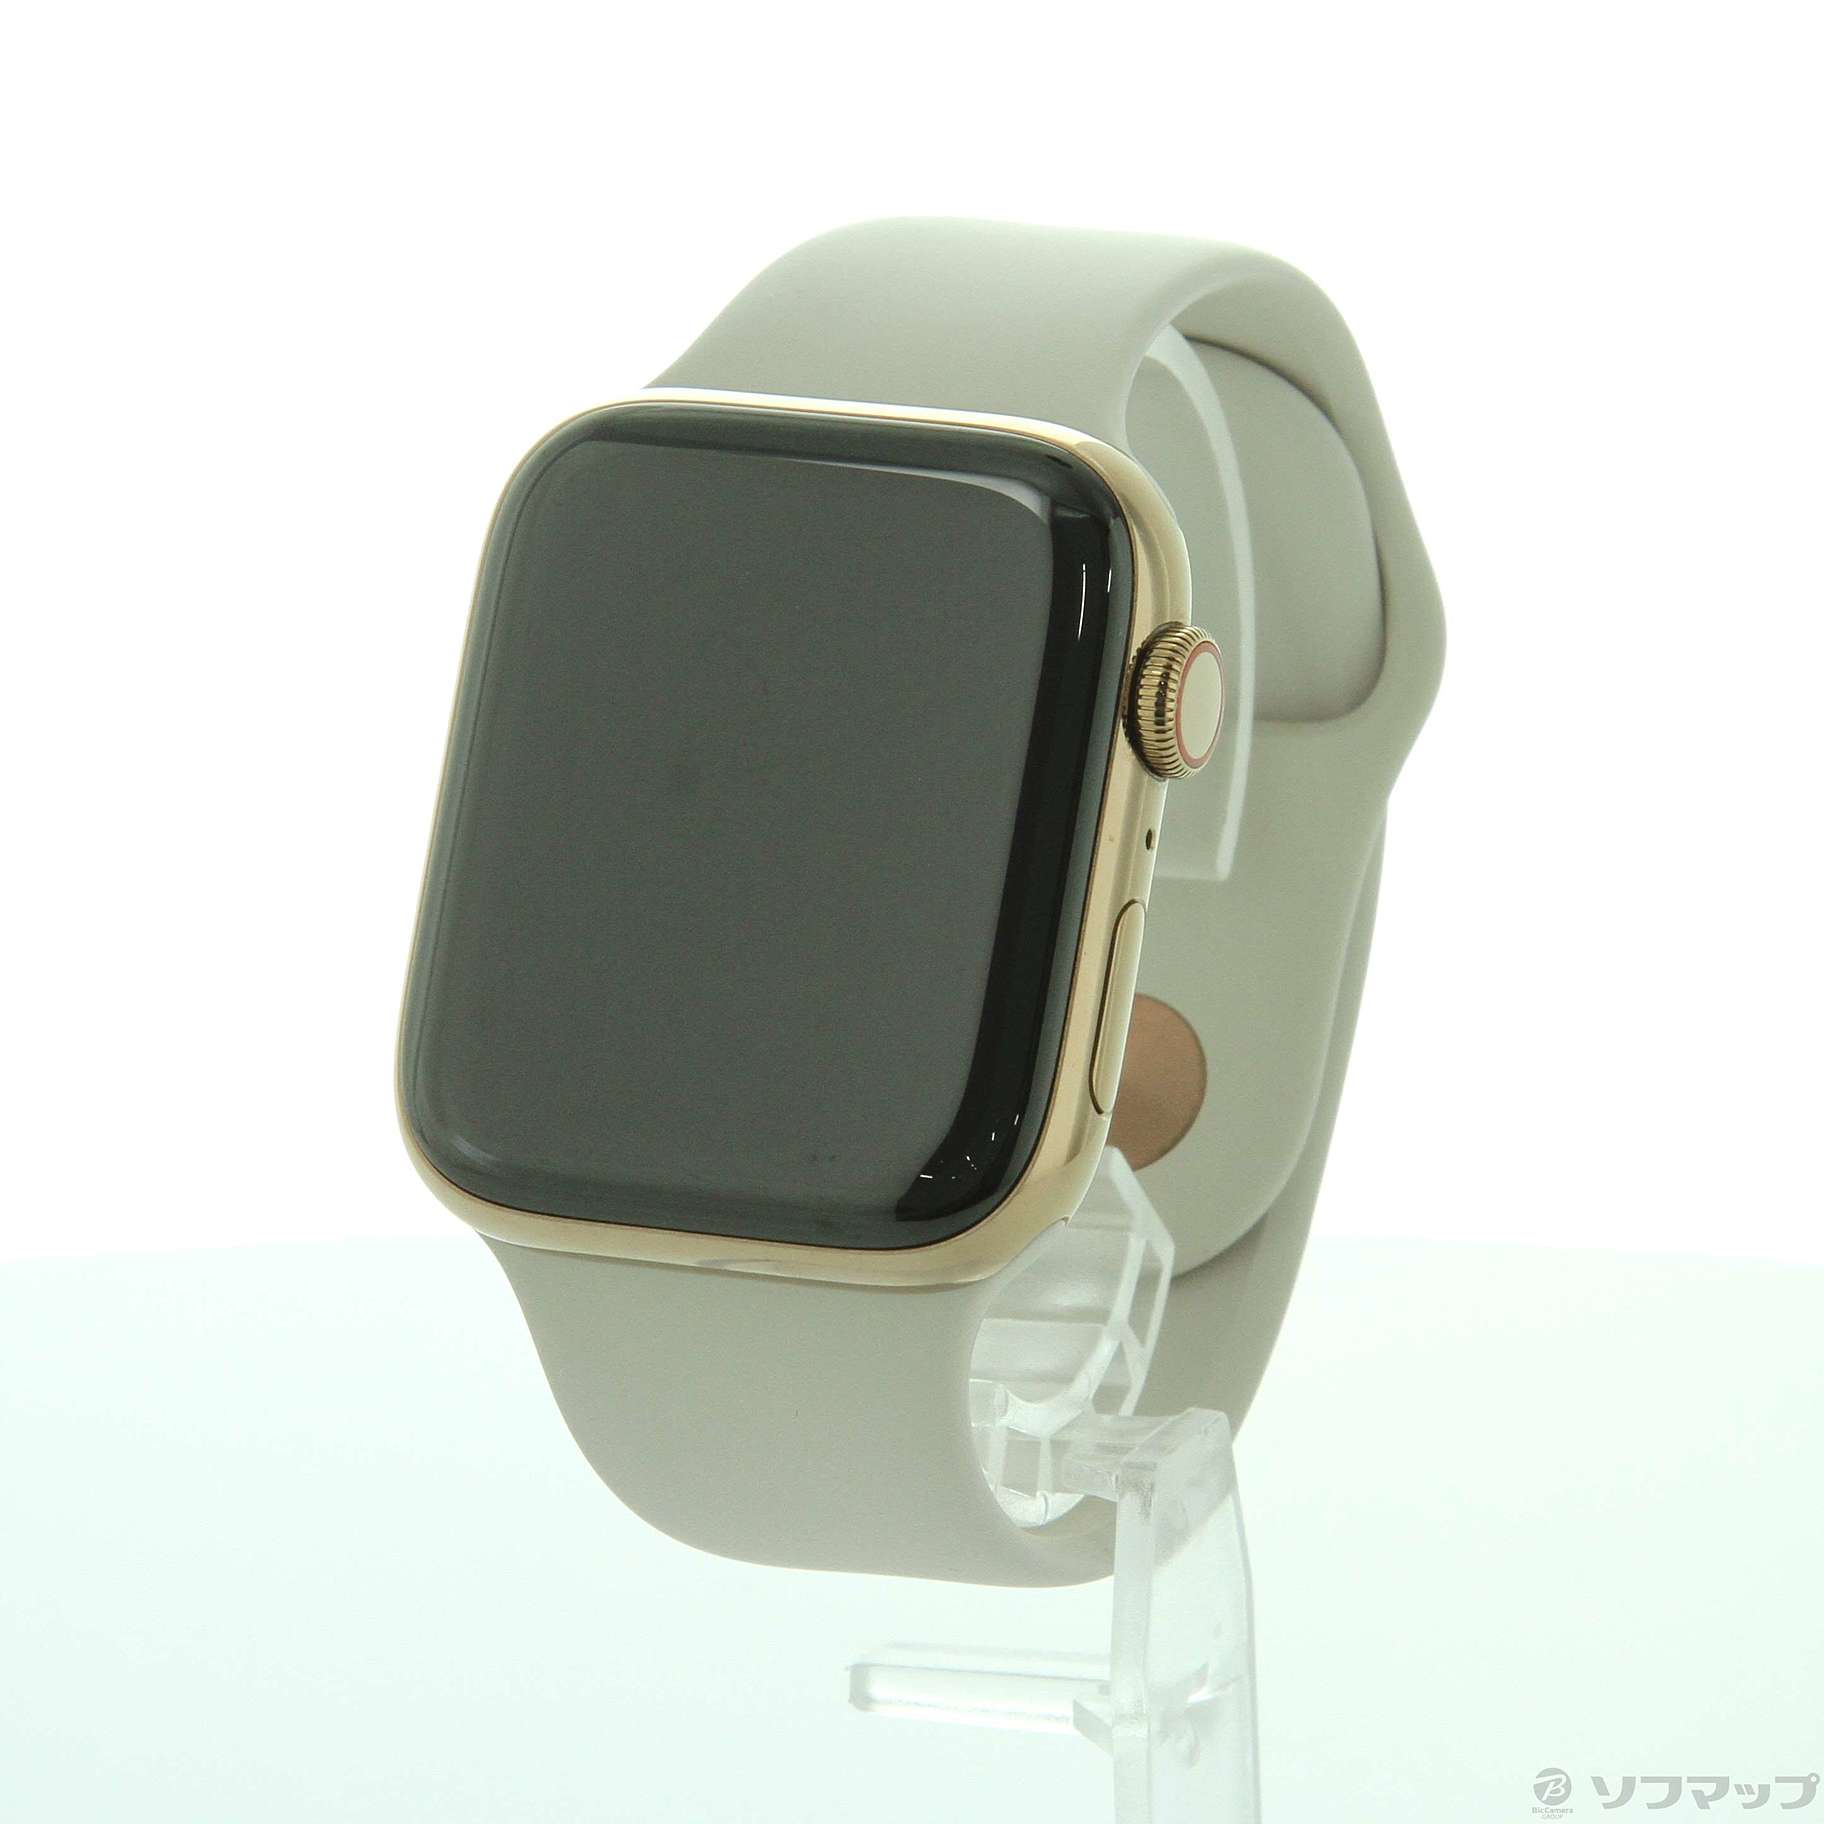 (純正品) Apple Watch series4 セルラー 44mm 未開封